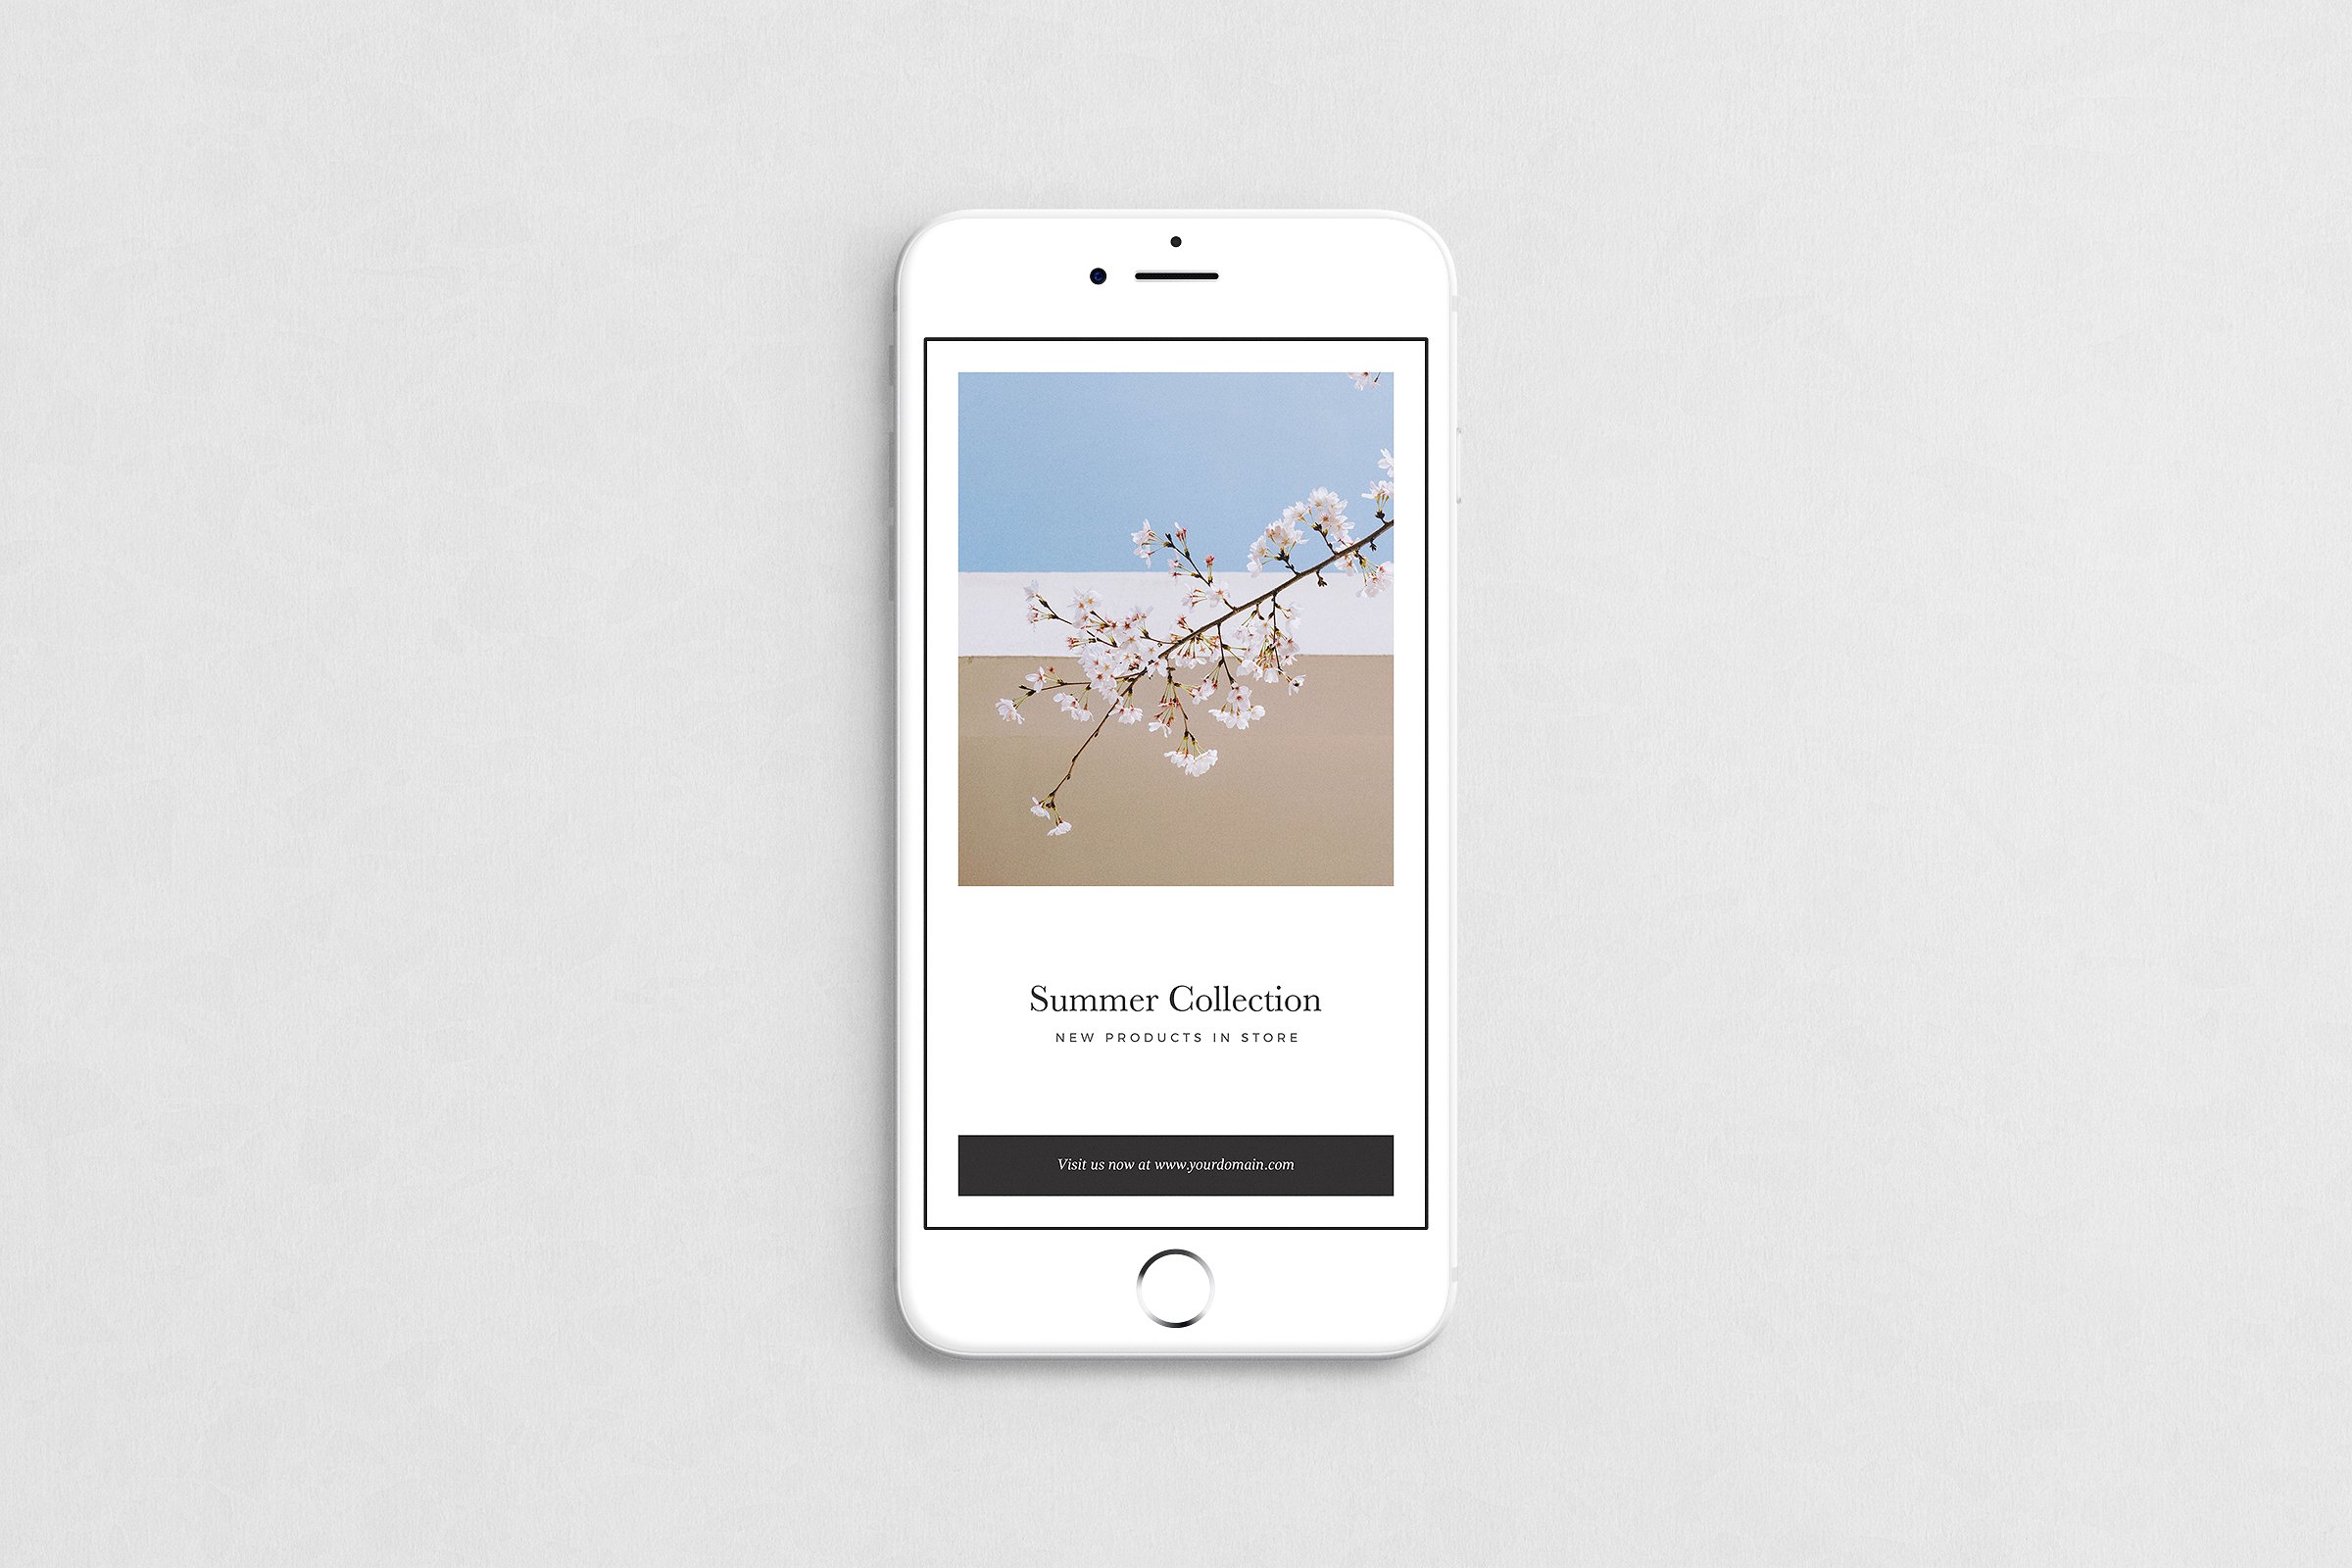 潮流时尚新媒体贴图模板蚂蚁素材精选 New York Instagram Stories插图(2)